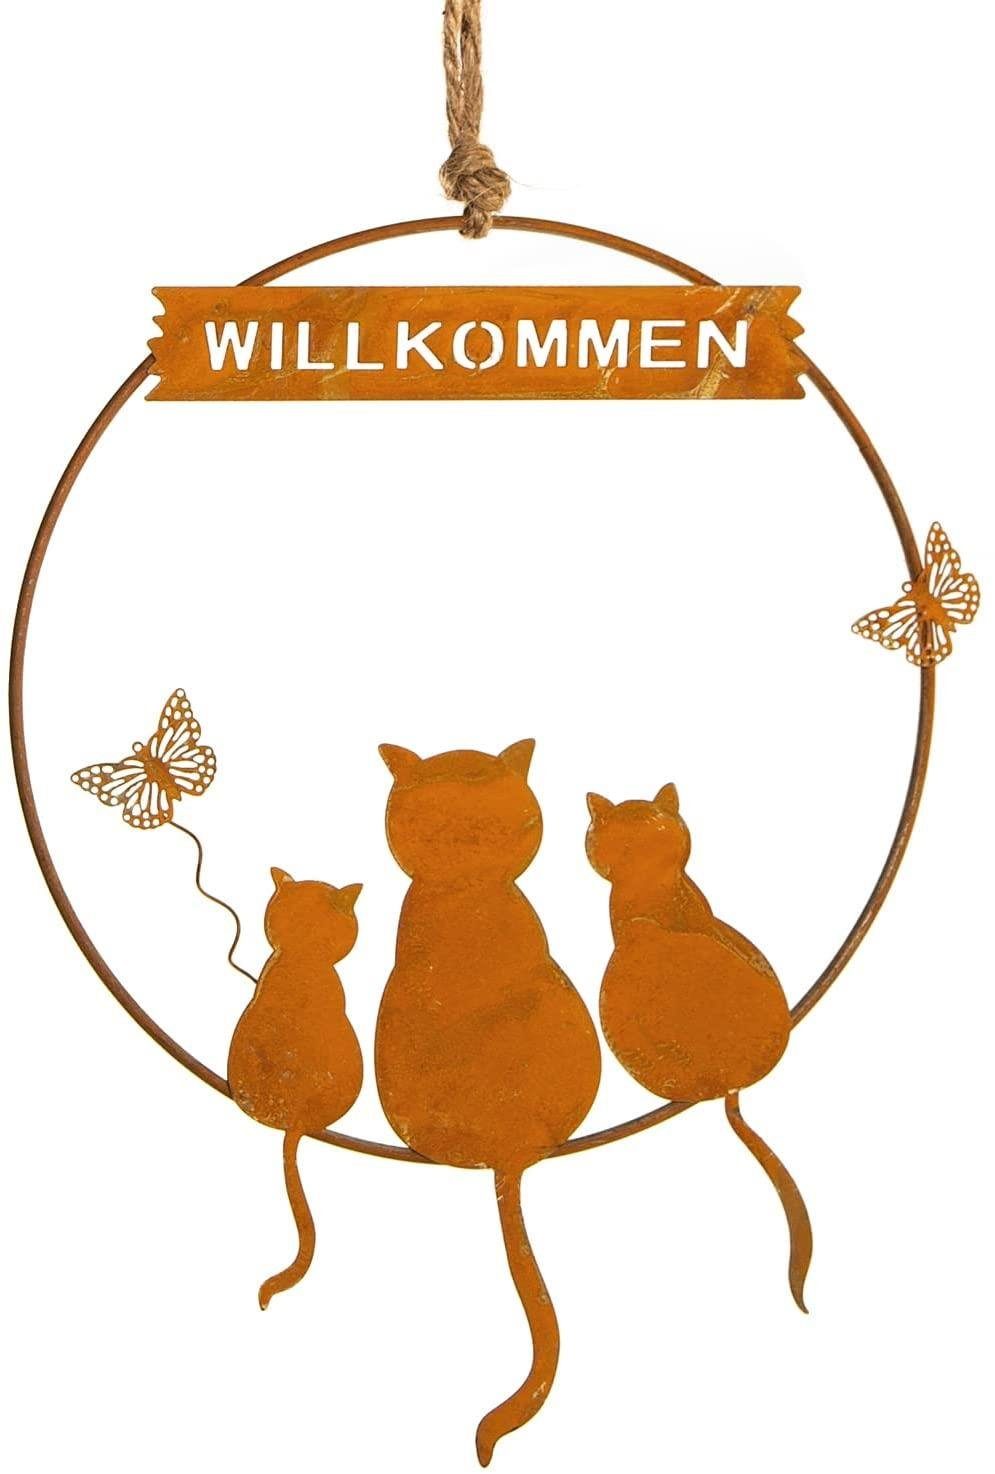 rostbraun "Willkommen" mit Katzen-Motiv Türkranz Dekokranz Logbuch-Verlag